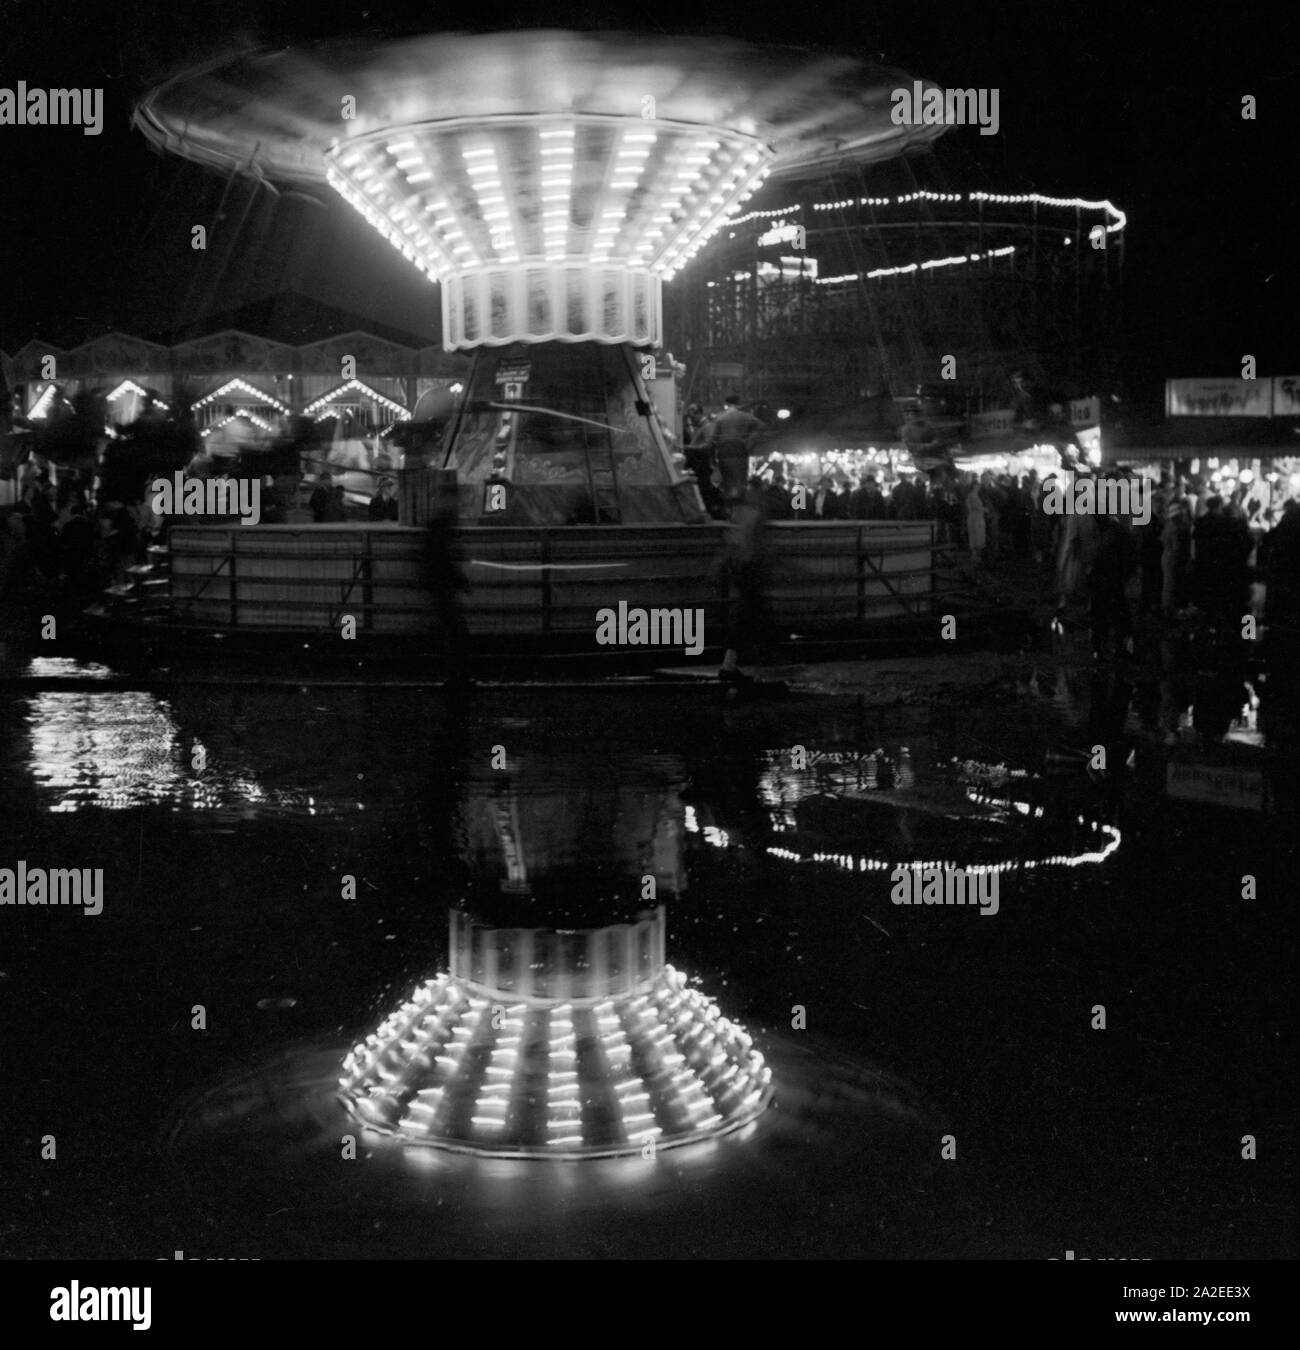 Ein Kettenkarussell spiegelt sich in einer großen Pfütze auf der Festwiese in Berlin Stralau, Deutschland 1930er Jahre. A chairoplane is reflected in a giant puddle at the Berlin Stralau annual fair, Germany 1930s. Stock Photo